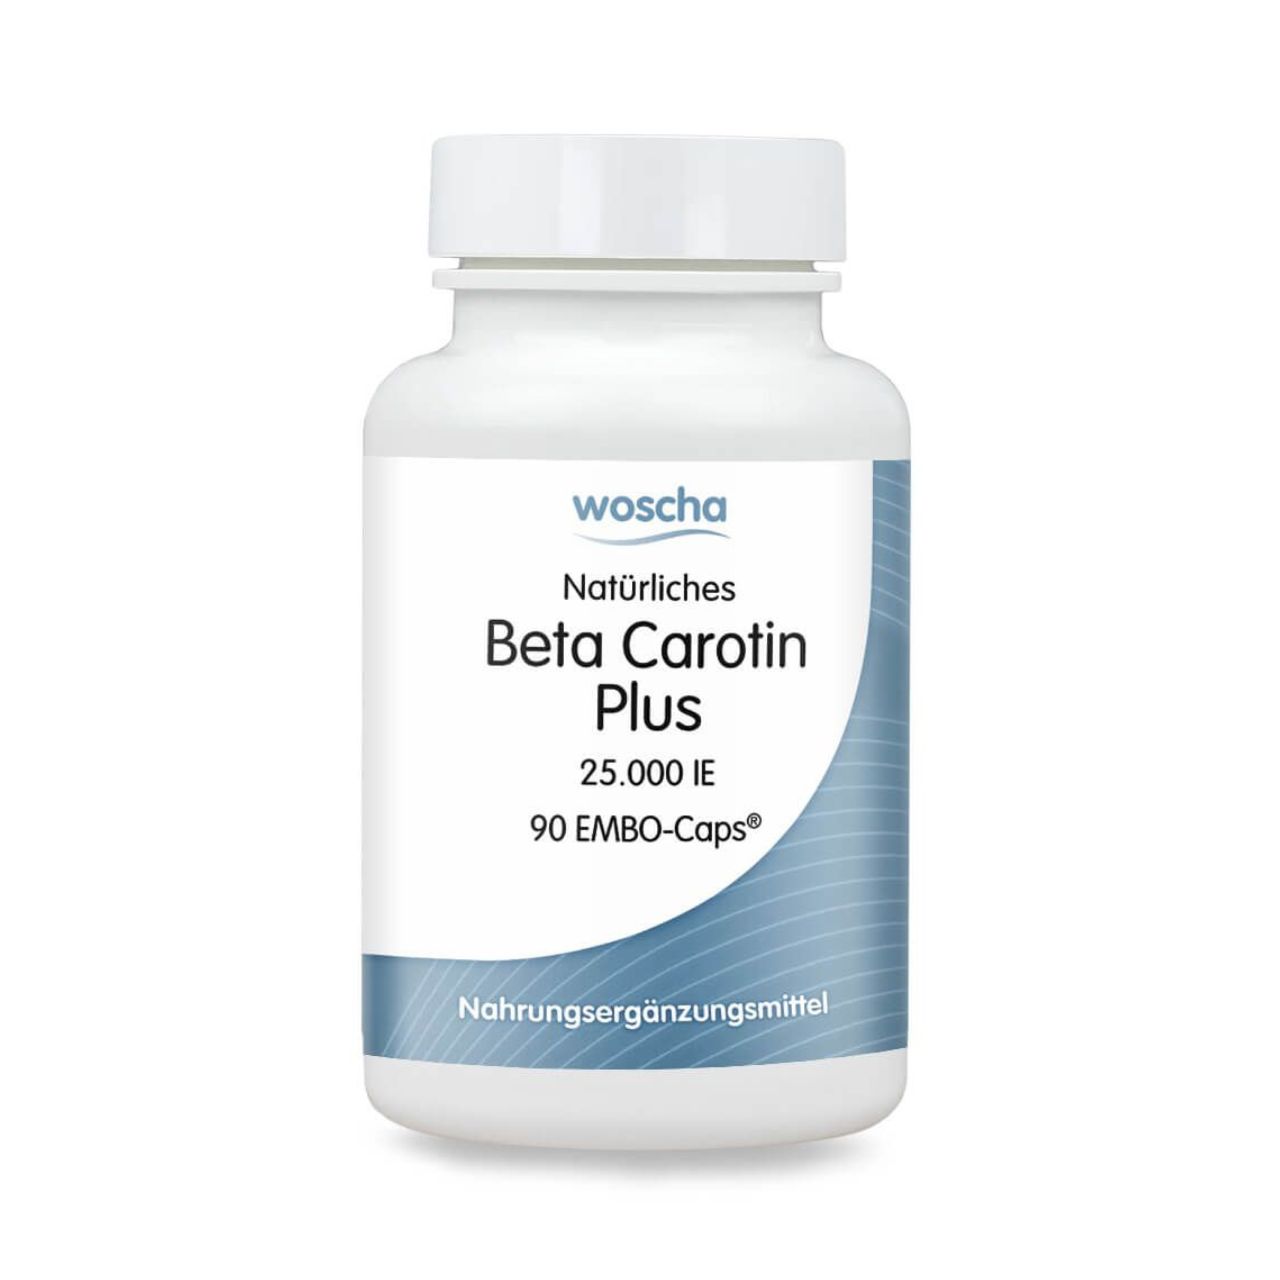 Woscha Natürliches Beta Carotin Plus von podo medi beinhaltet 90 Kapseln